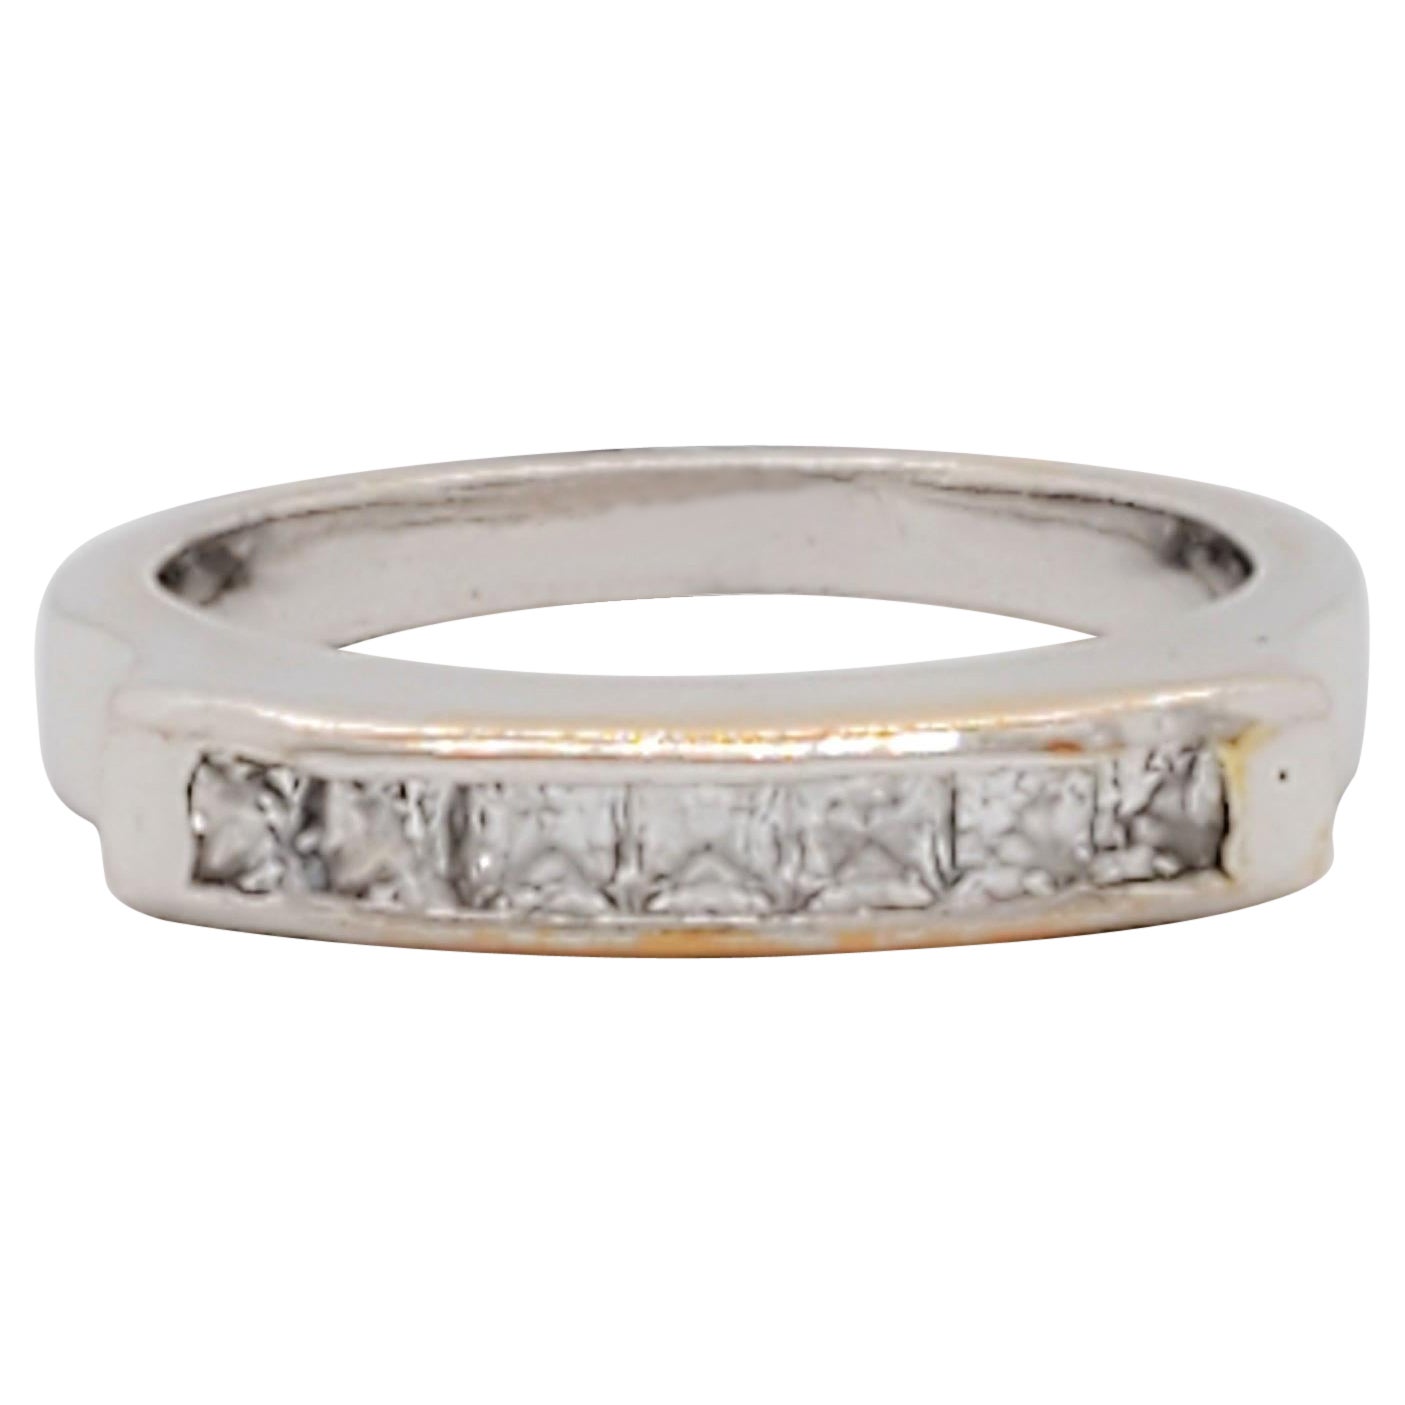 Quadratischer Weißer Diamant-Ring aus 18 Karat Weißgold